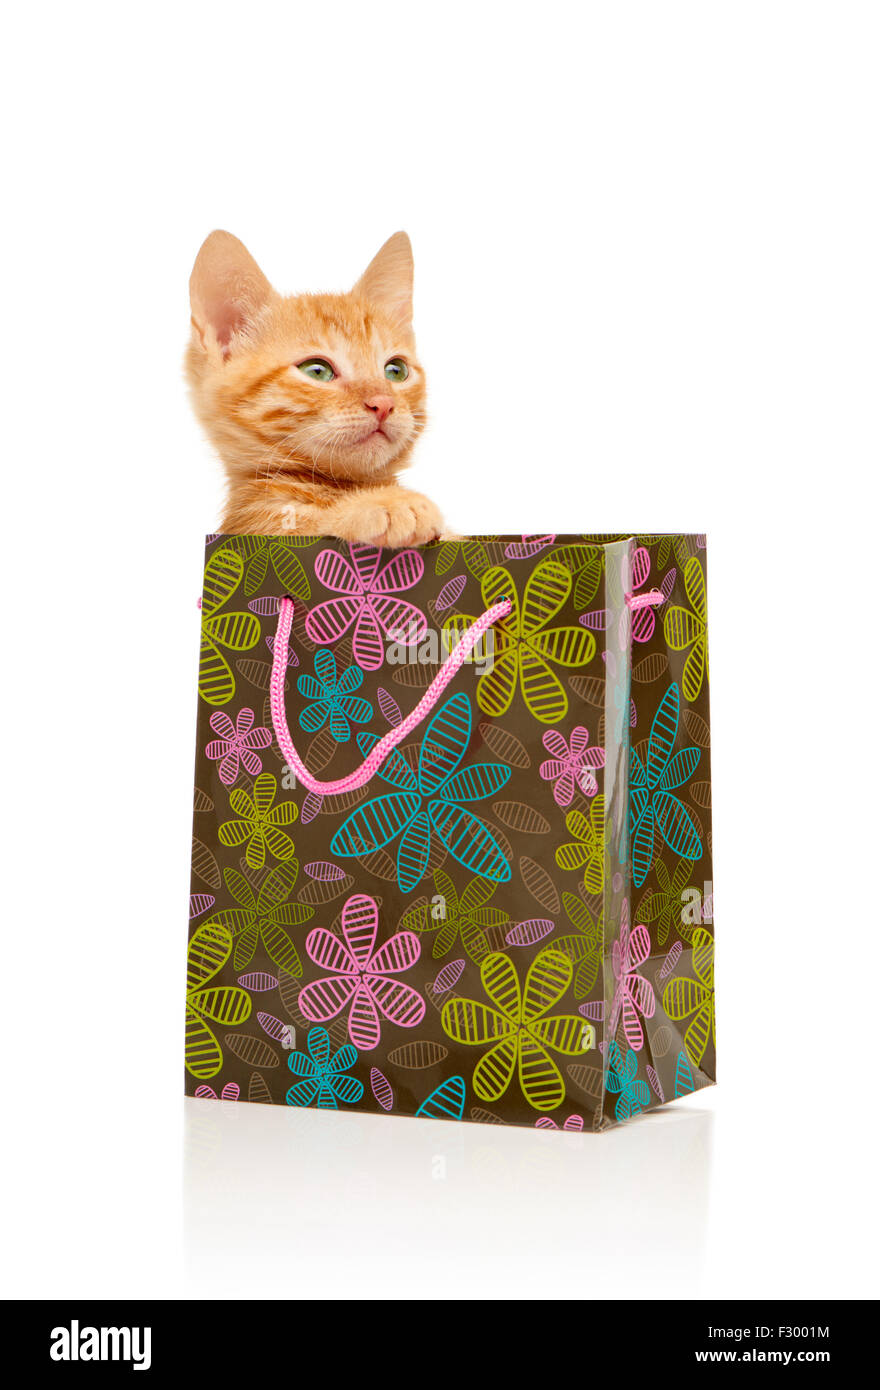 Glamorous seriamente little red gattino seduto nel verde fiorito, rosa e blu shopping bag, isolato su sfondo bianco Foto Stock